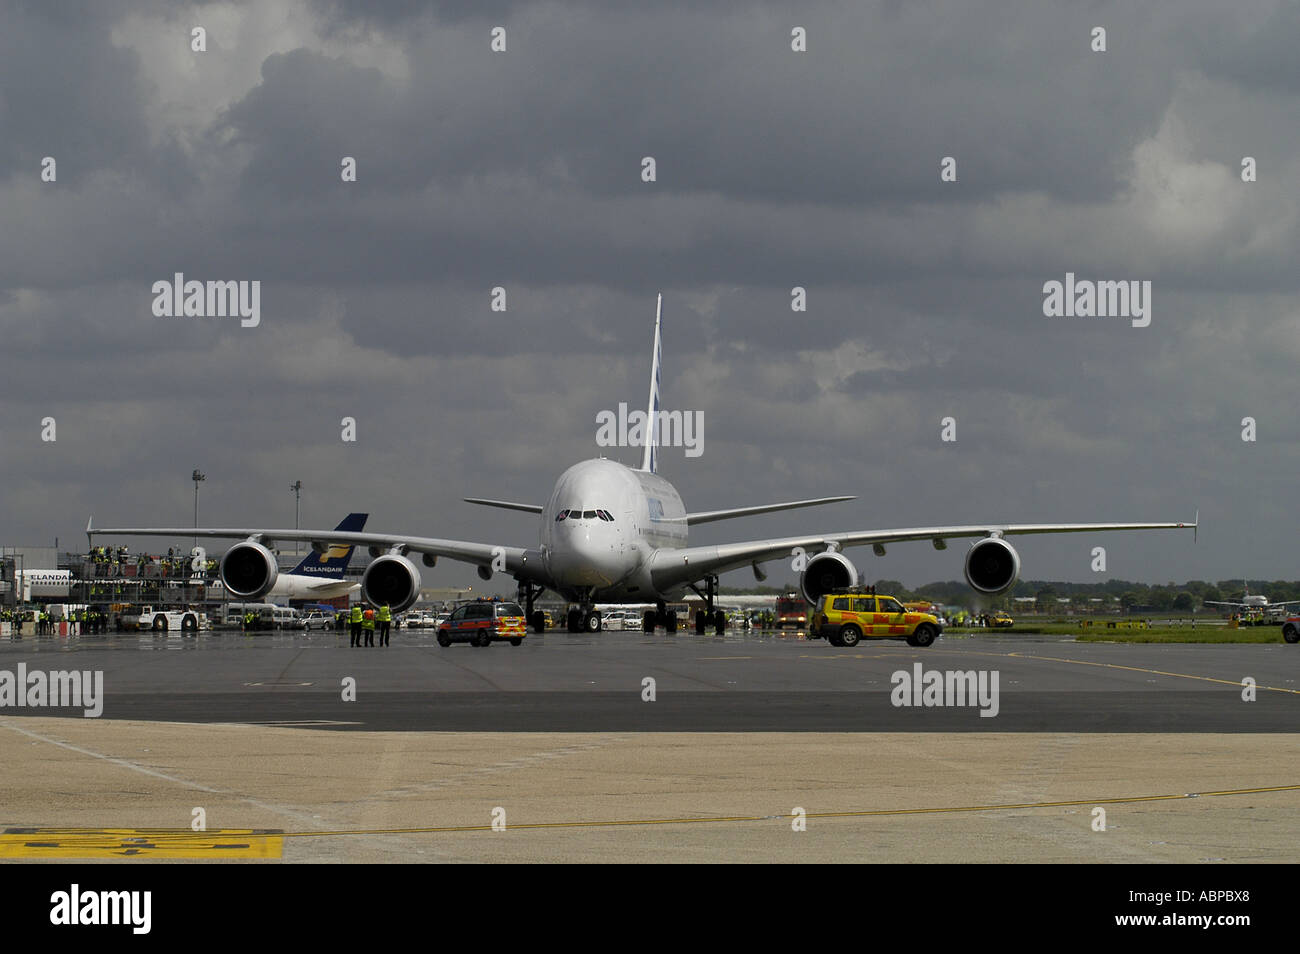 Der neue Airbus A380 auf Jungfernflug Besuch s London Heathrow Flughafen Bild von Andrew Hasson 18. Mai 2006 Stockfoto